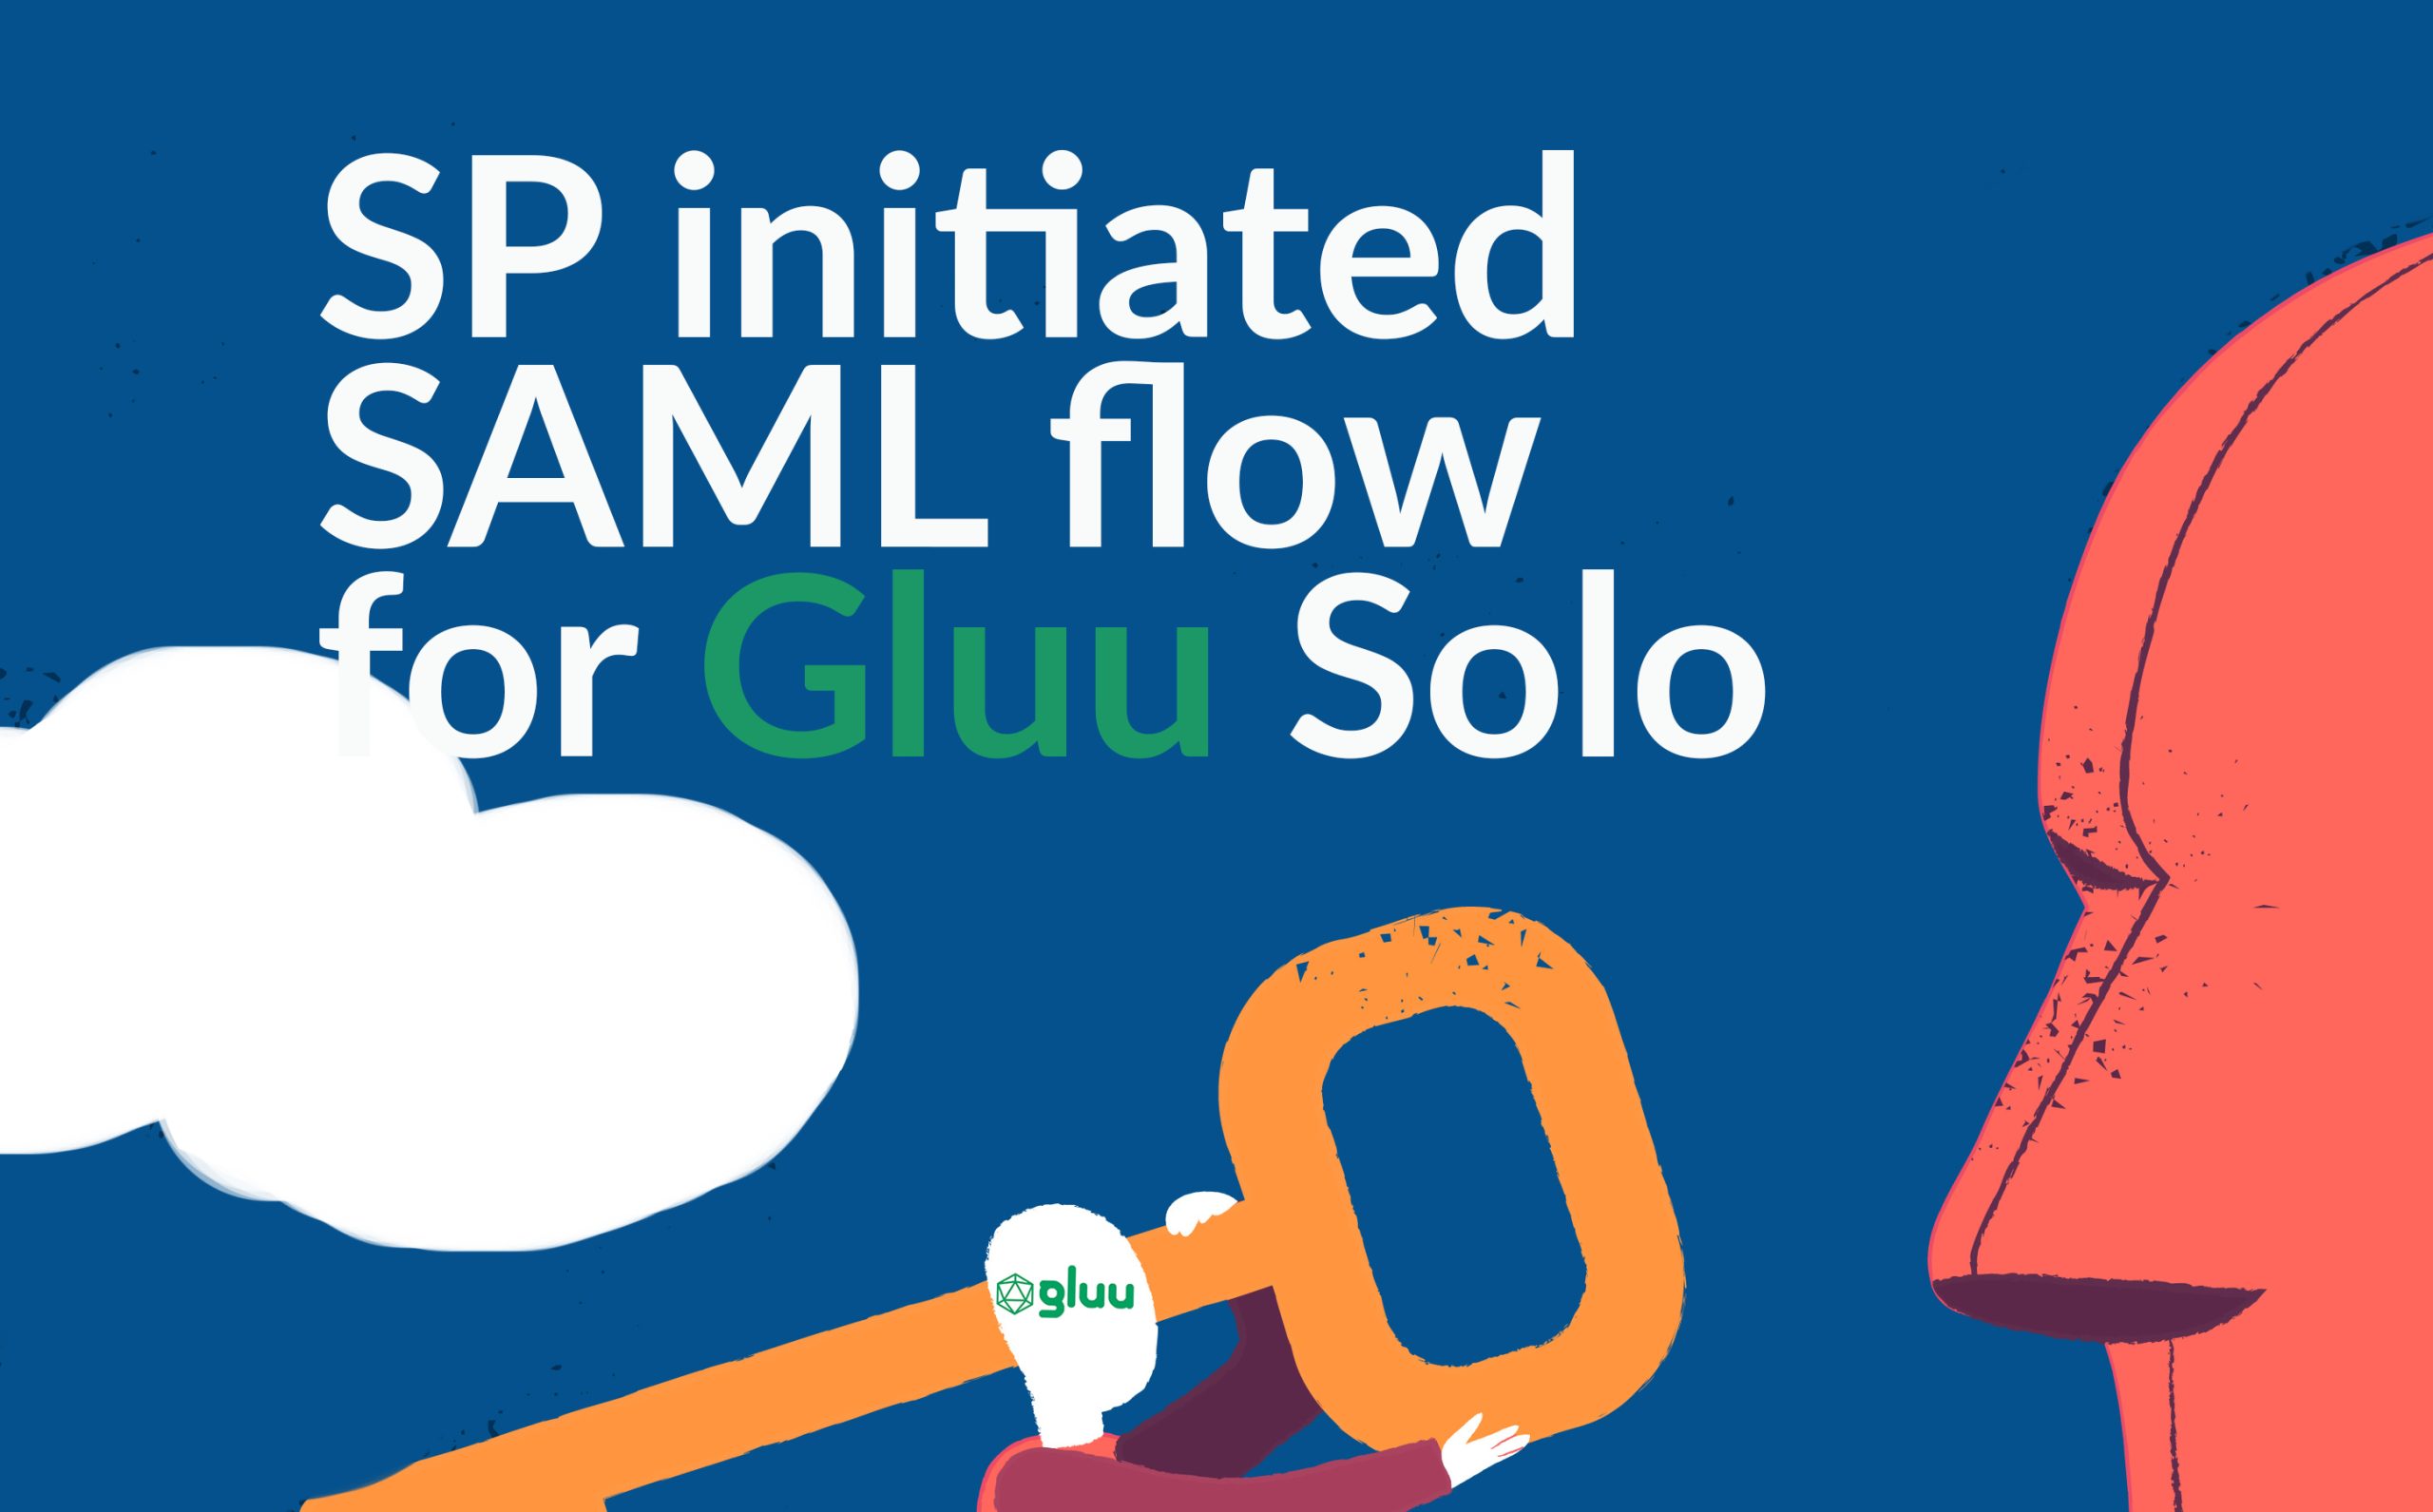 SP initiated SAML flow for Gluu Solo